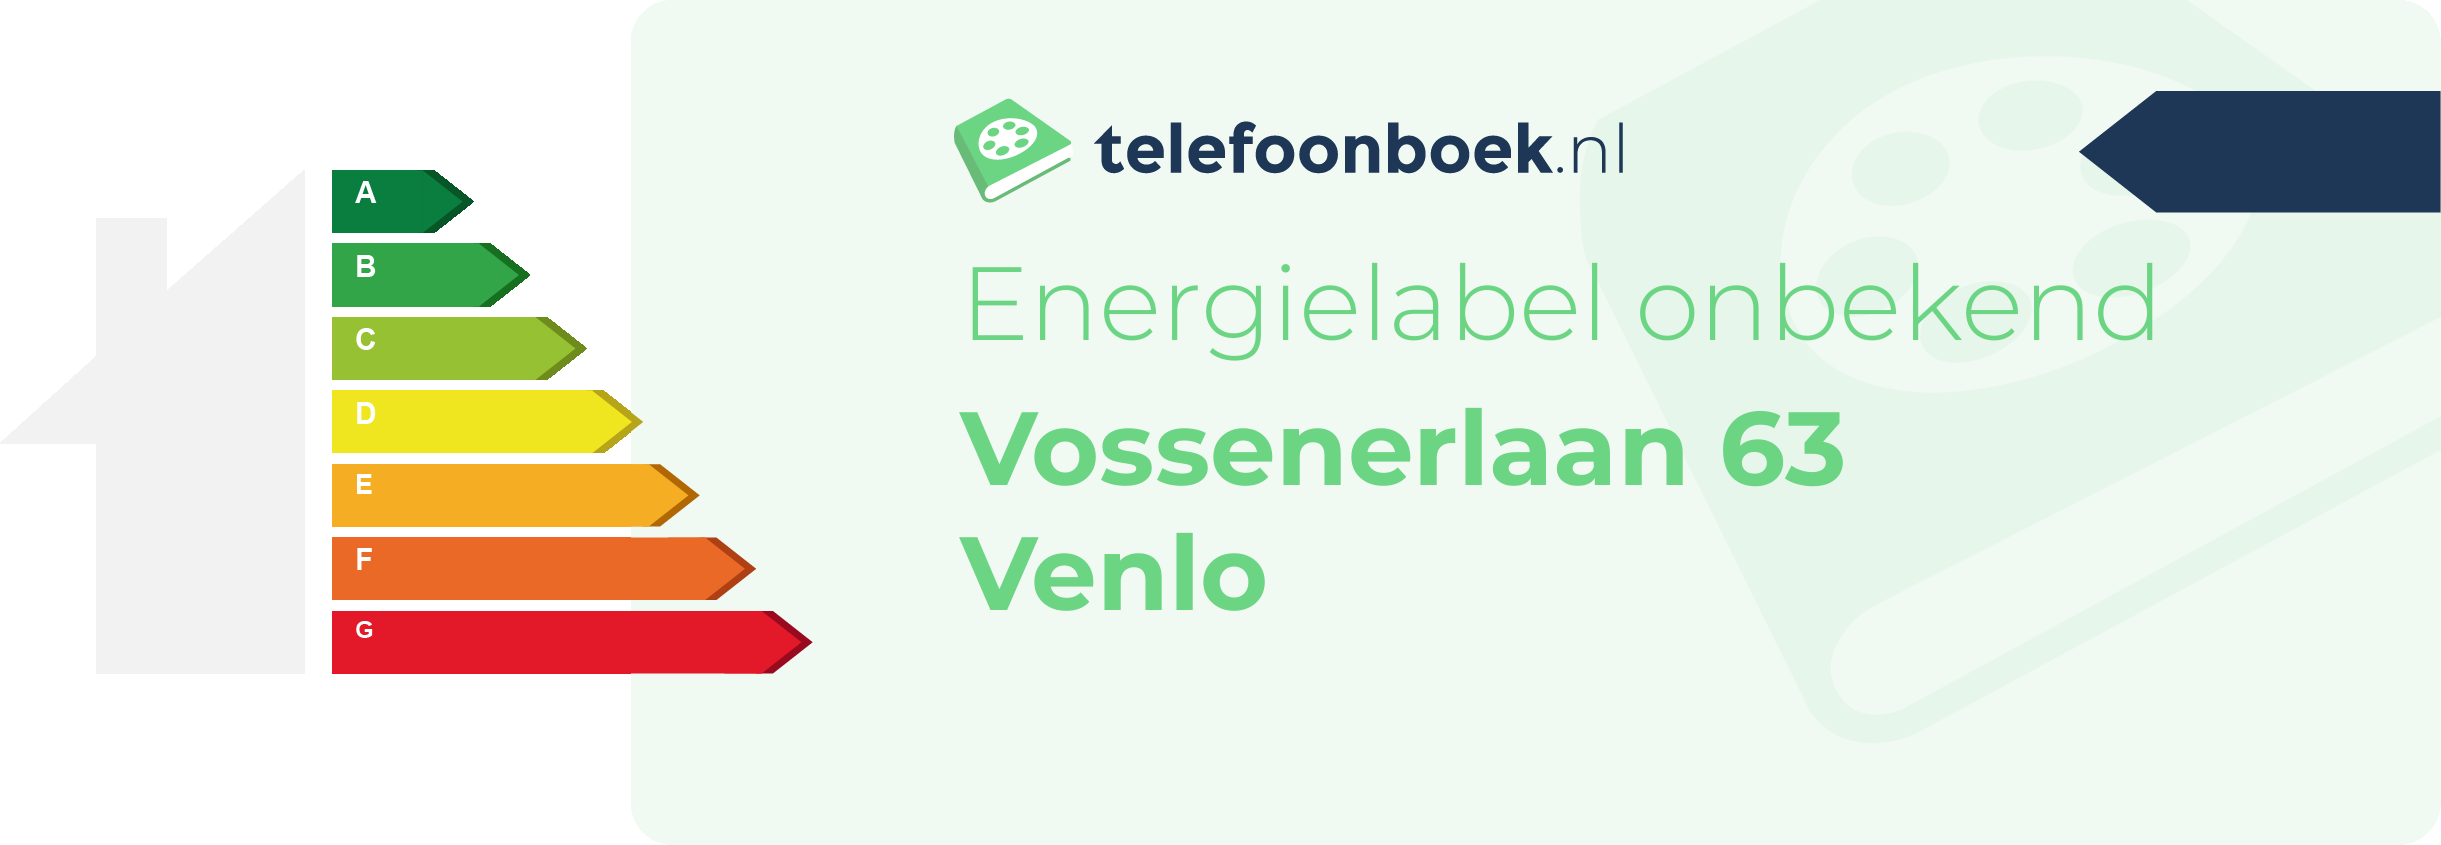 Energielabel Vossenerlaan 63 Venlo